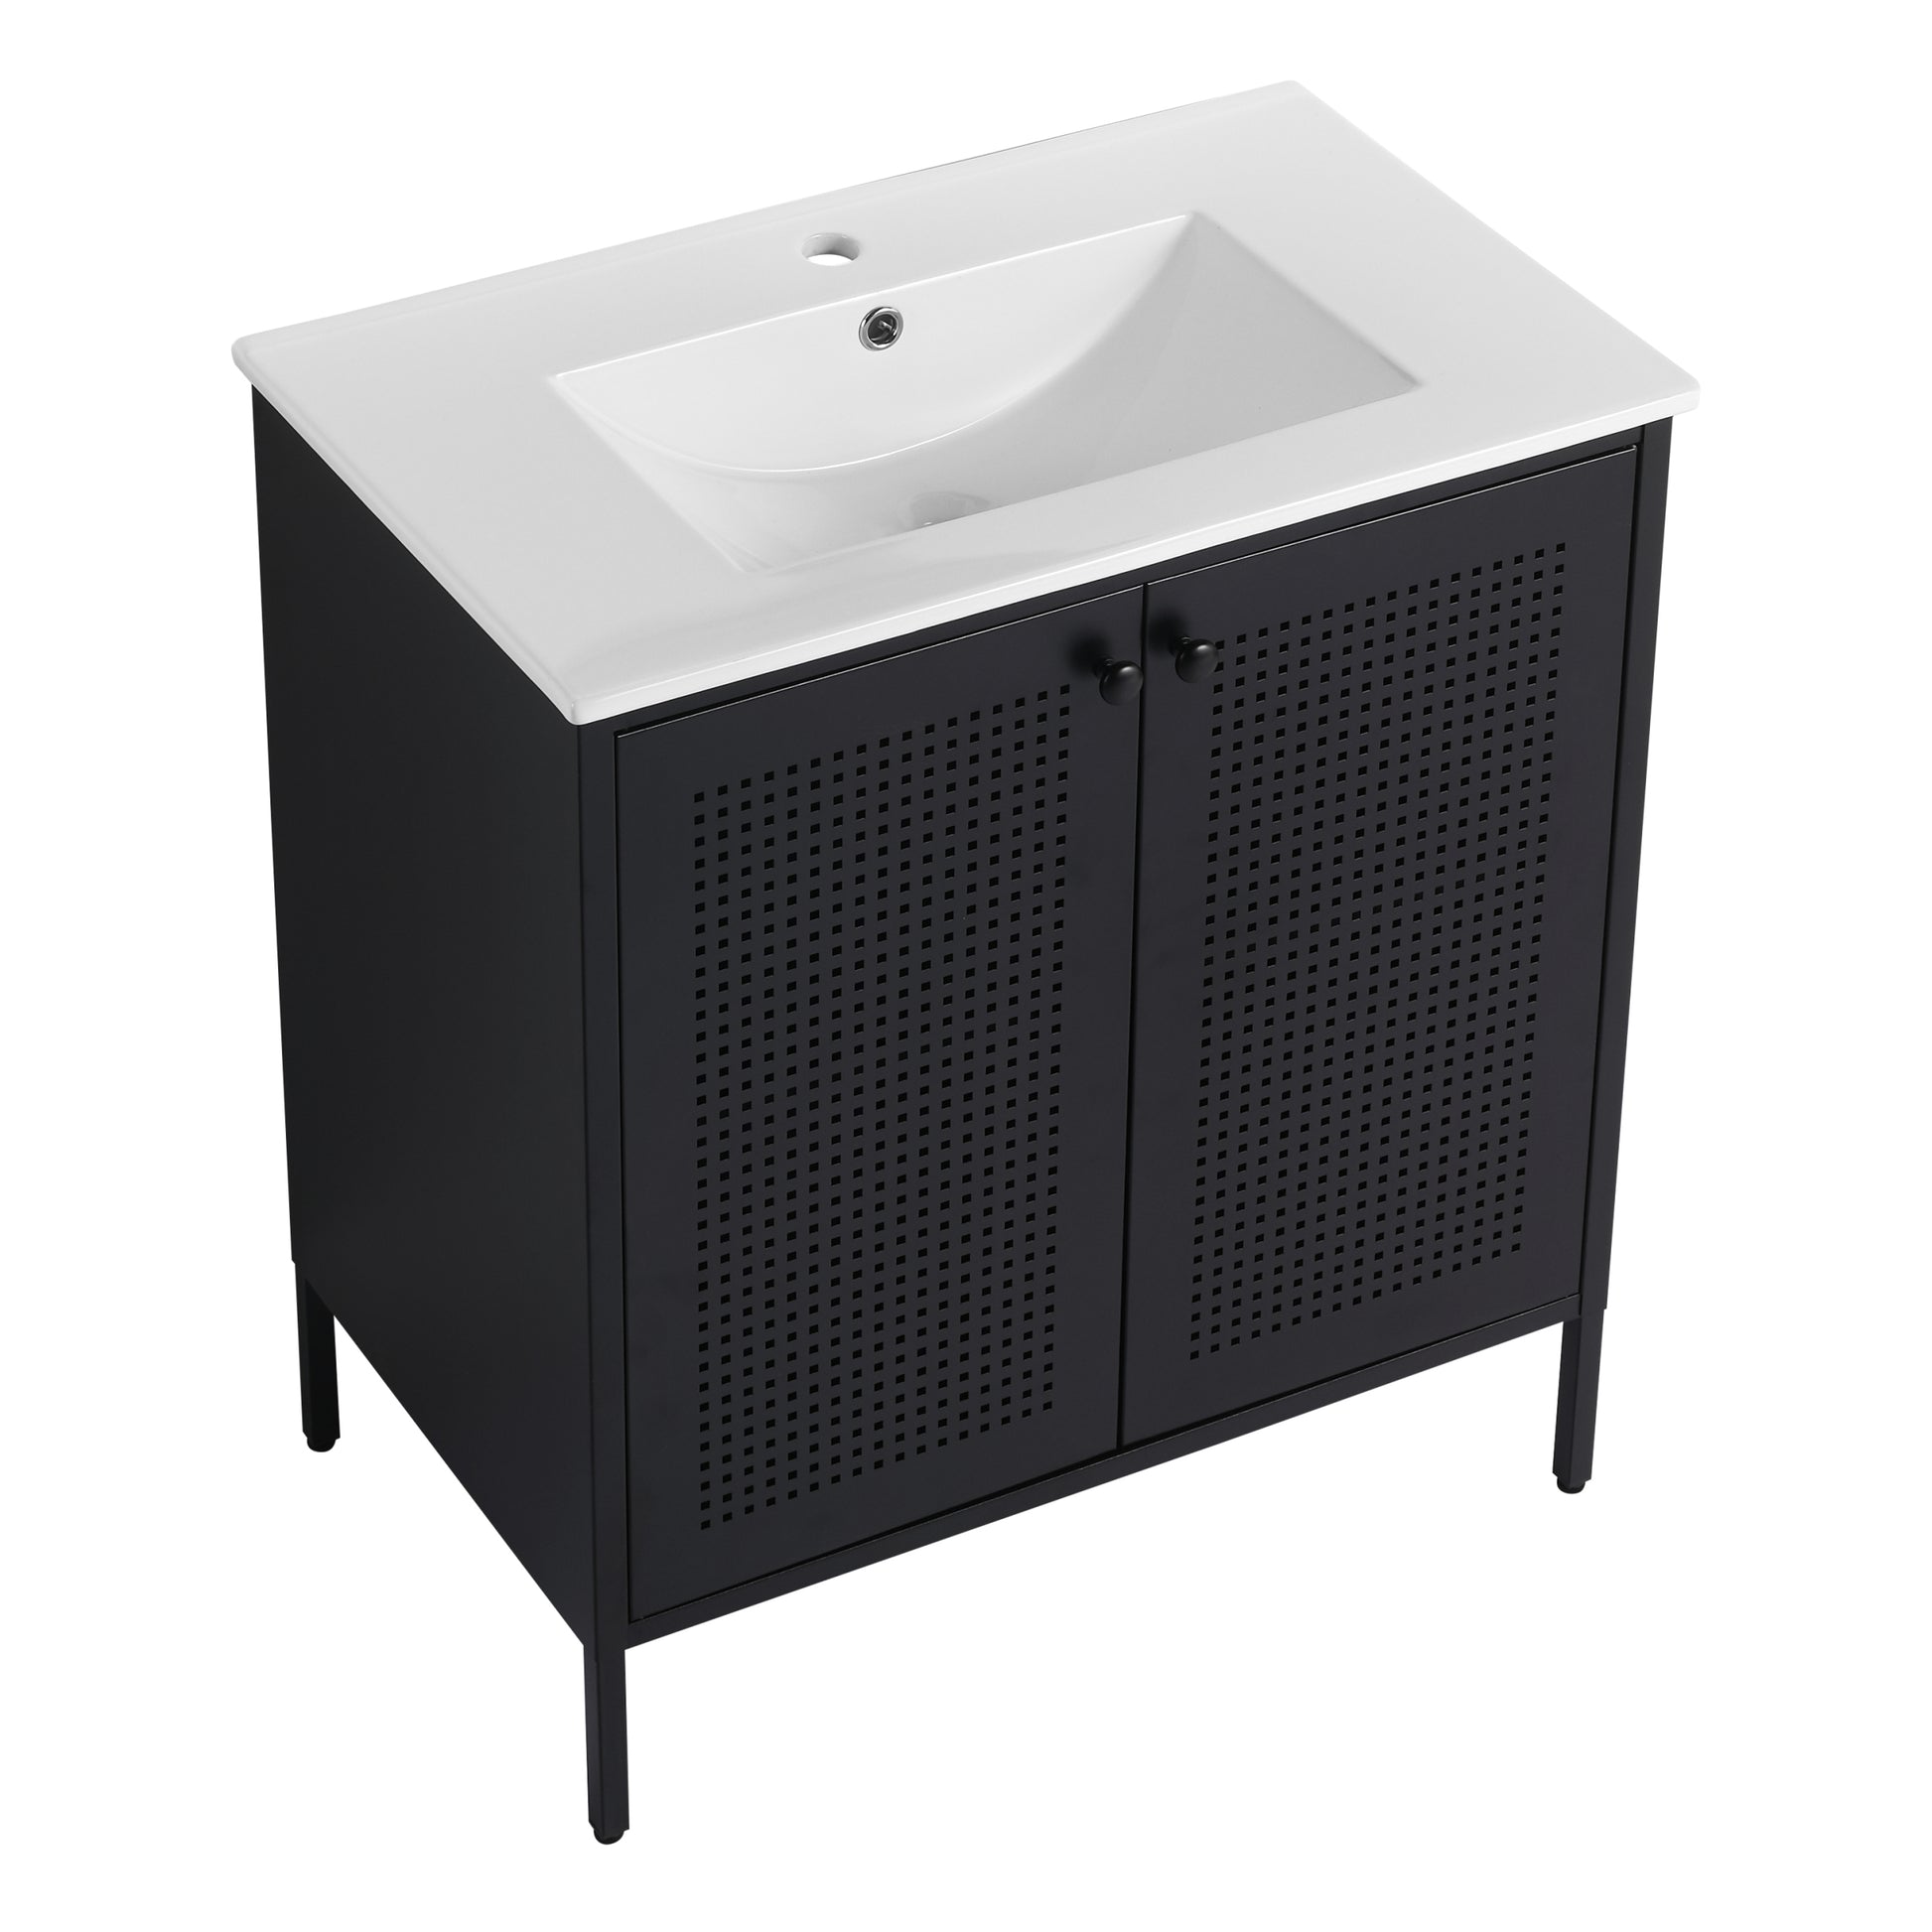 30 Inch Freestanding Bathroom Vanity With Ceramic SInk black-2-bathroom-freestanding-modern-steel